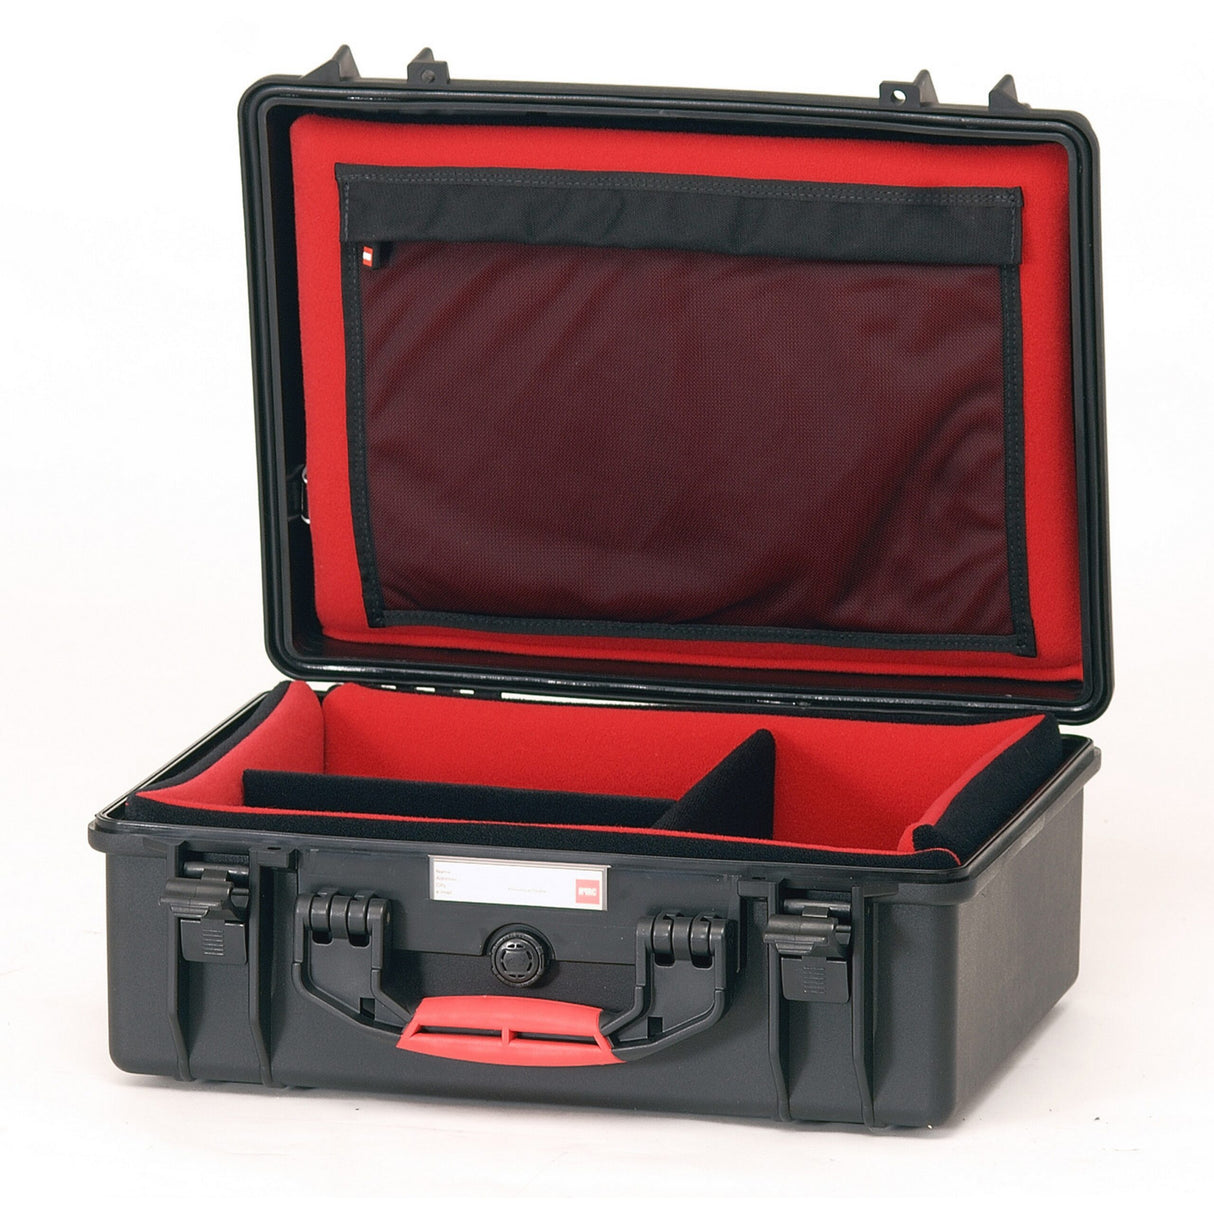 HPRC 2500DK Hard Case with Divider Kit